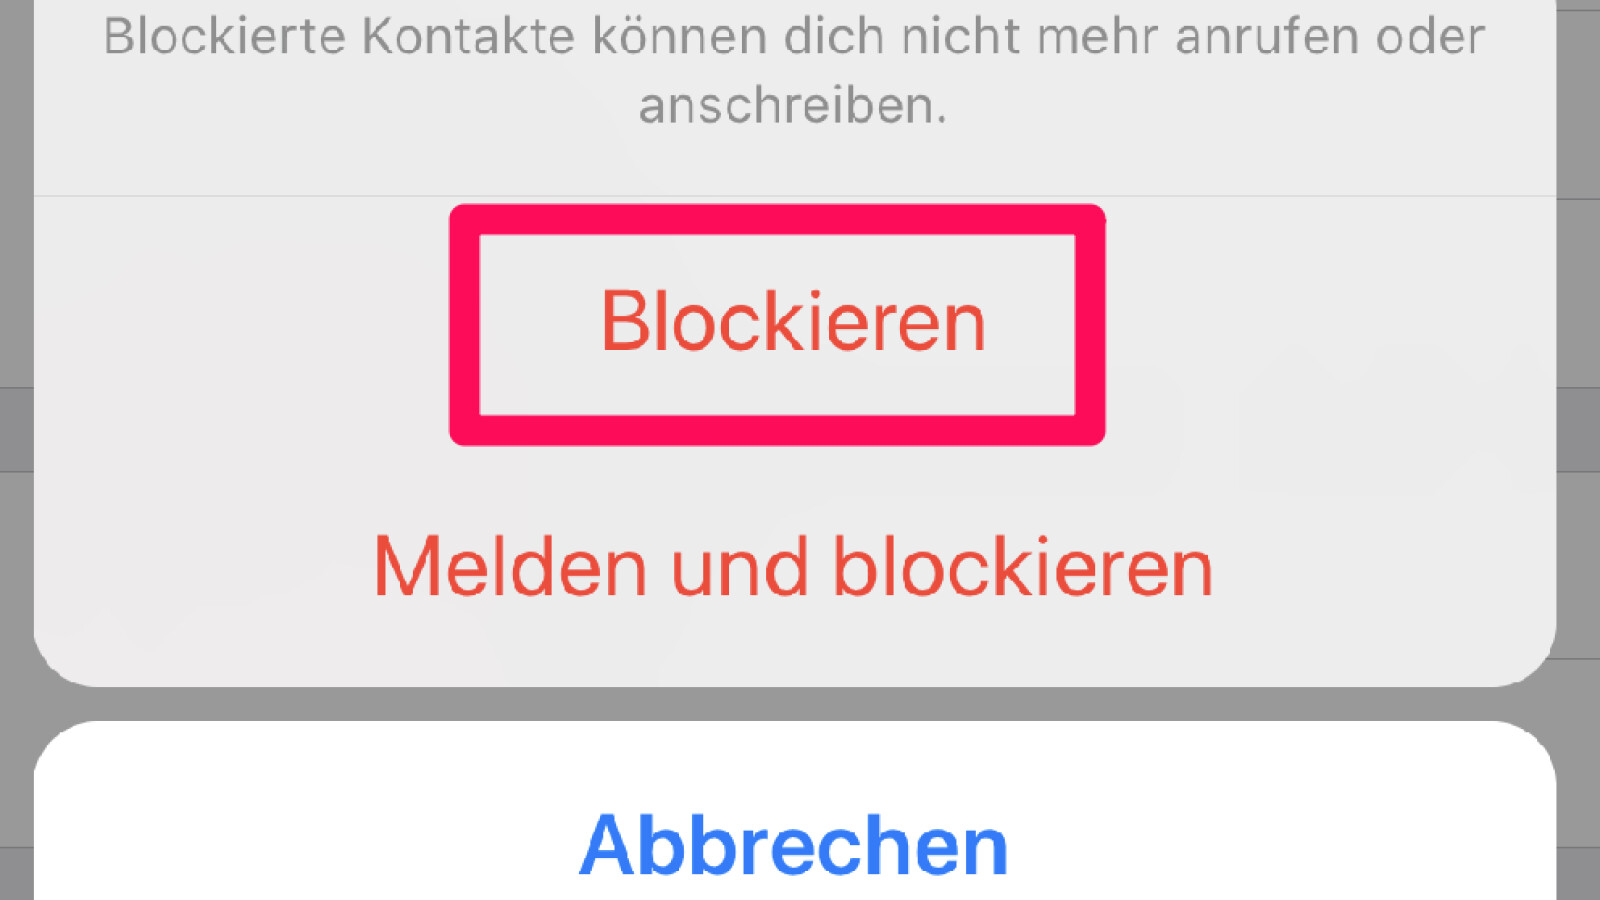 Können blockierte whatsapp kontakte sehen ob ich online bin